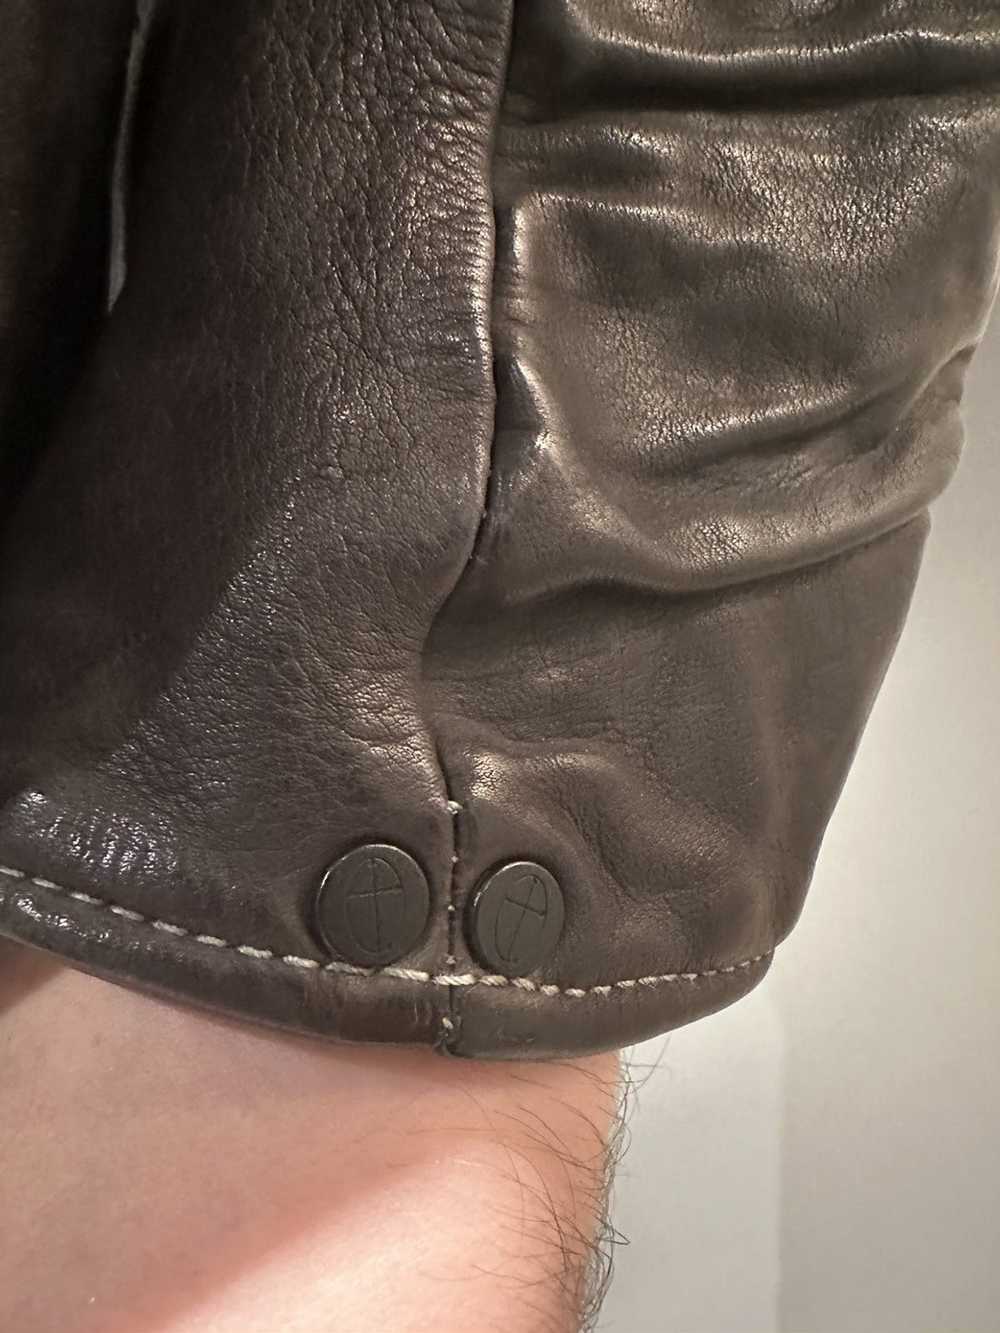 Incarnation Incarnation leather jacket - image 4